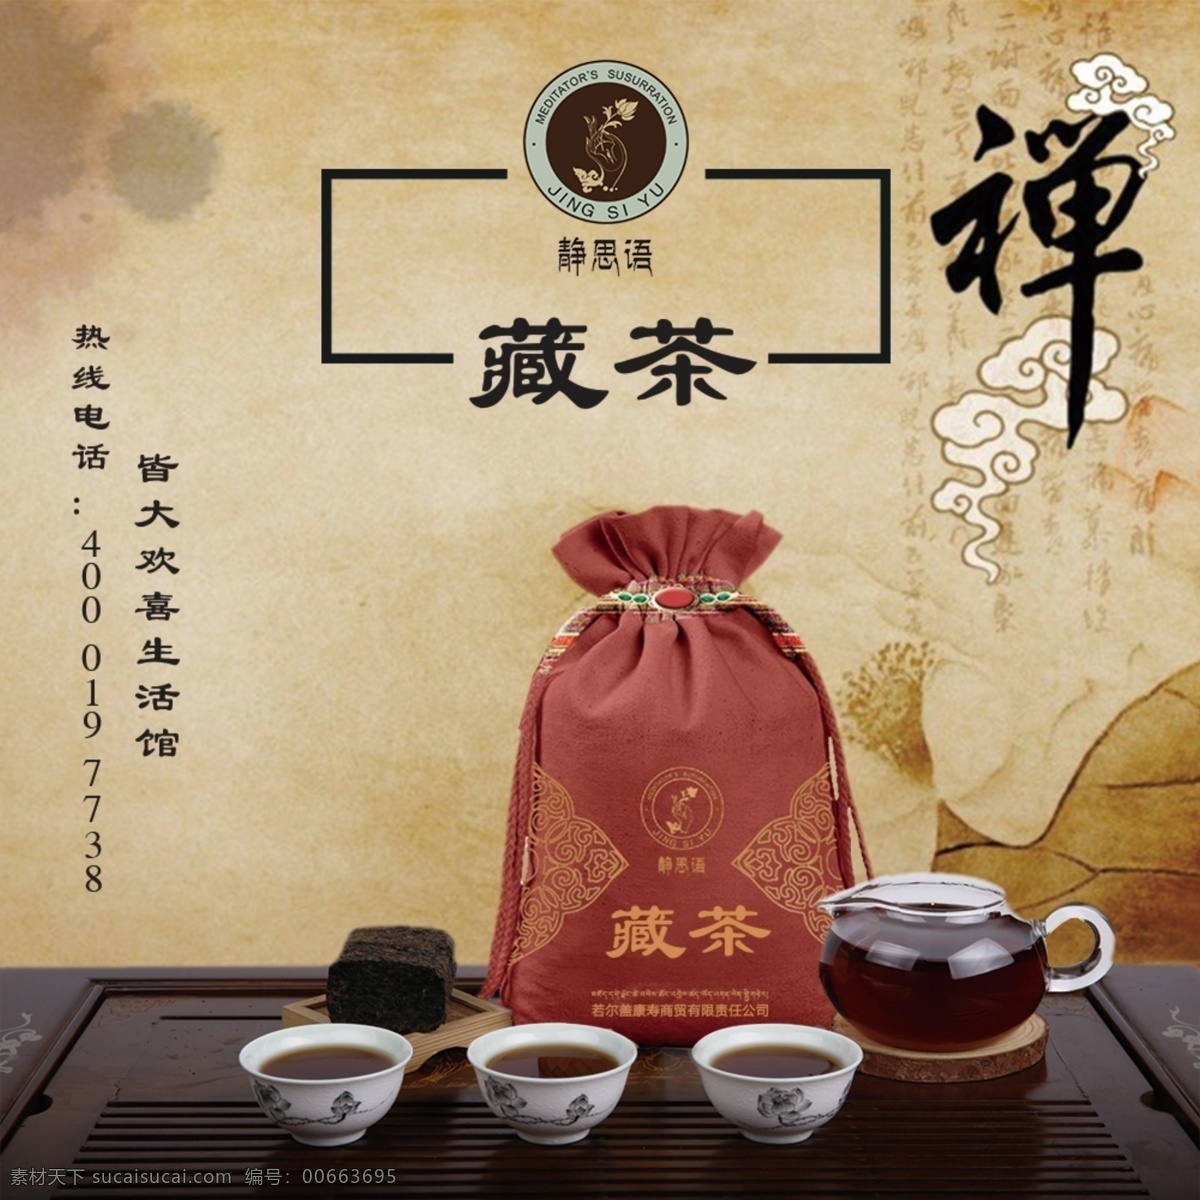 佛教 式 背景 藏 茶 味 品牌 静思 语 为公司 形象